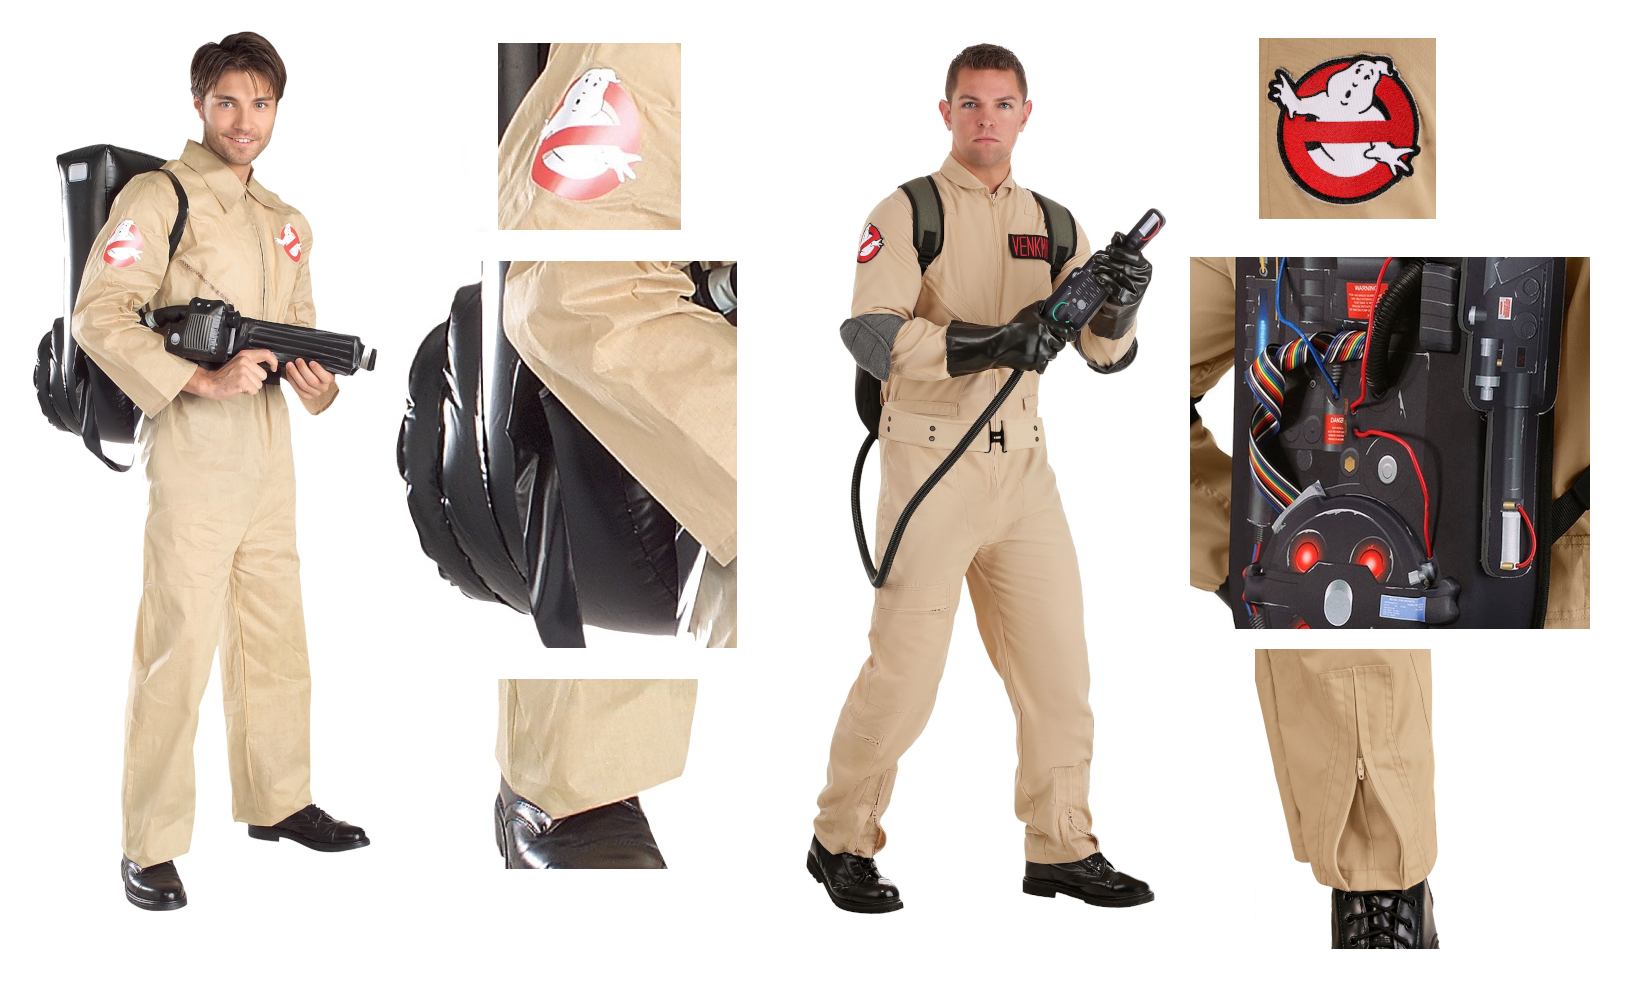 Ghostbusters Costume Comparison